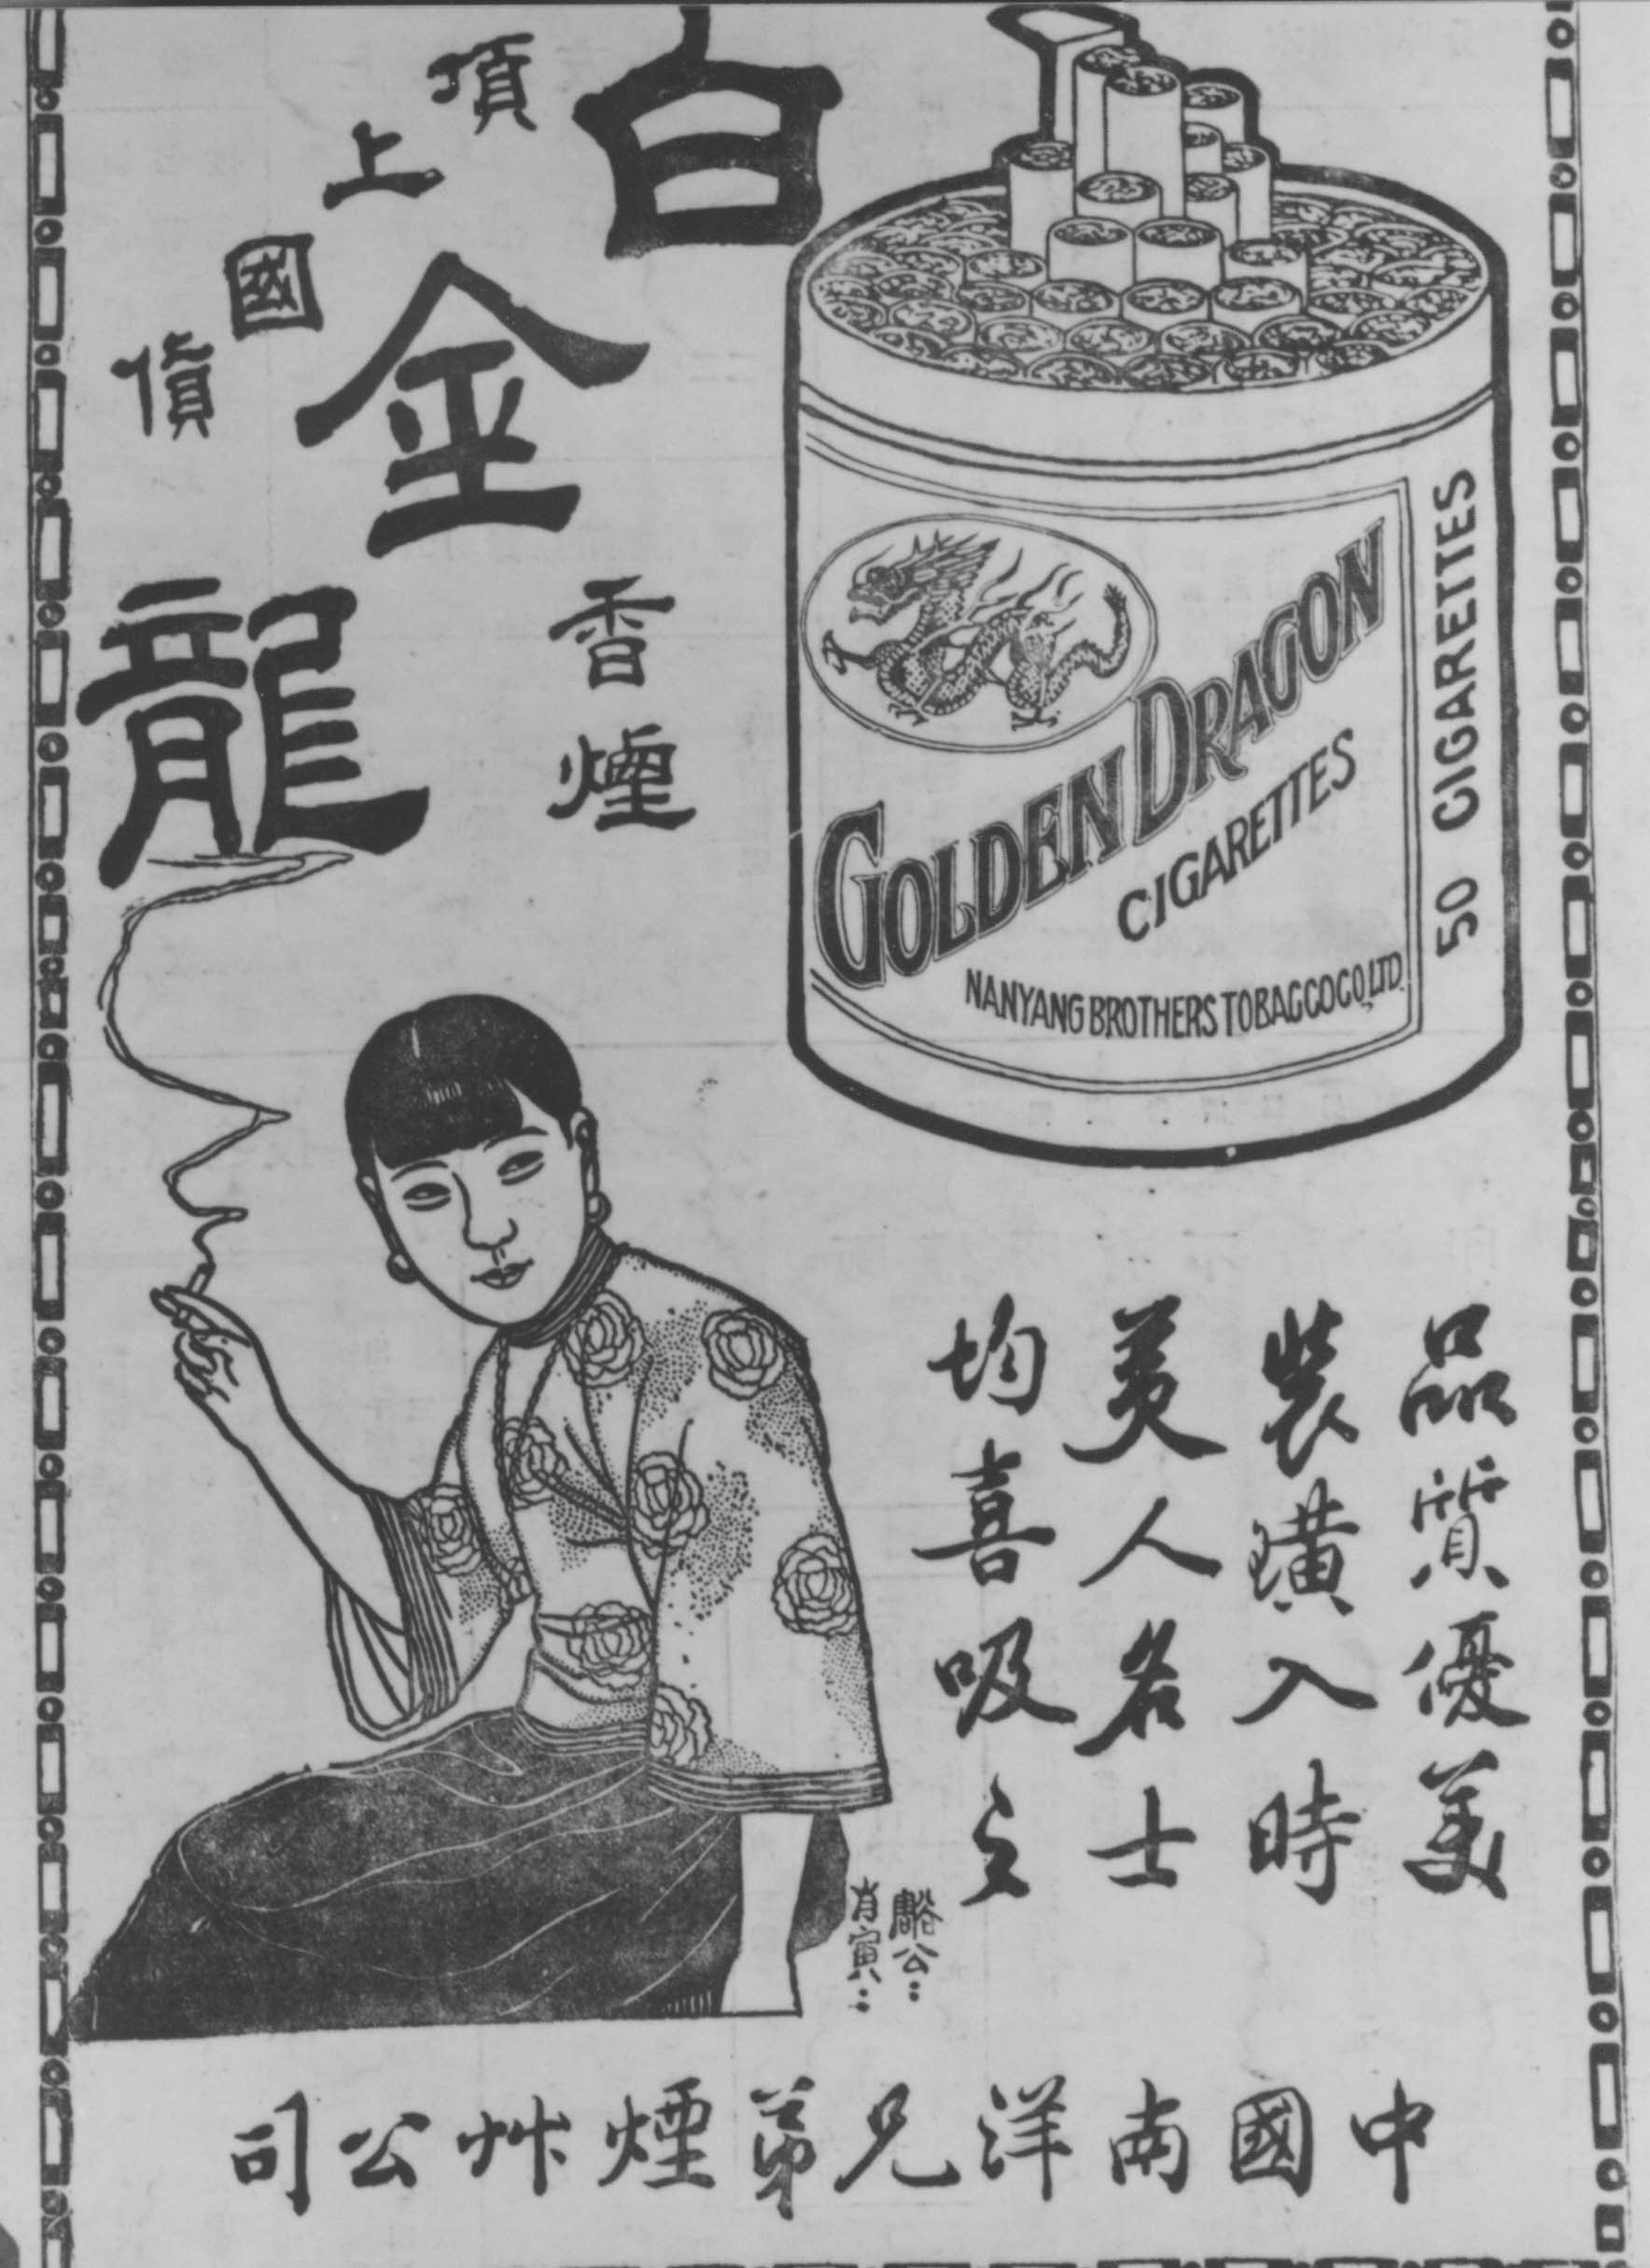 中国南洋兄弟烟草公司白金龙香烟广告- 数据- 民国图片资源库-北京国 